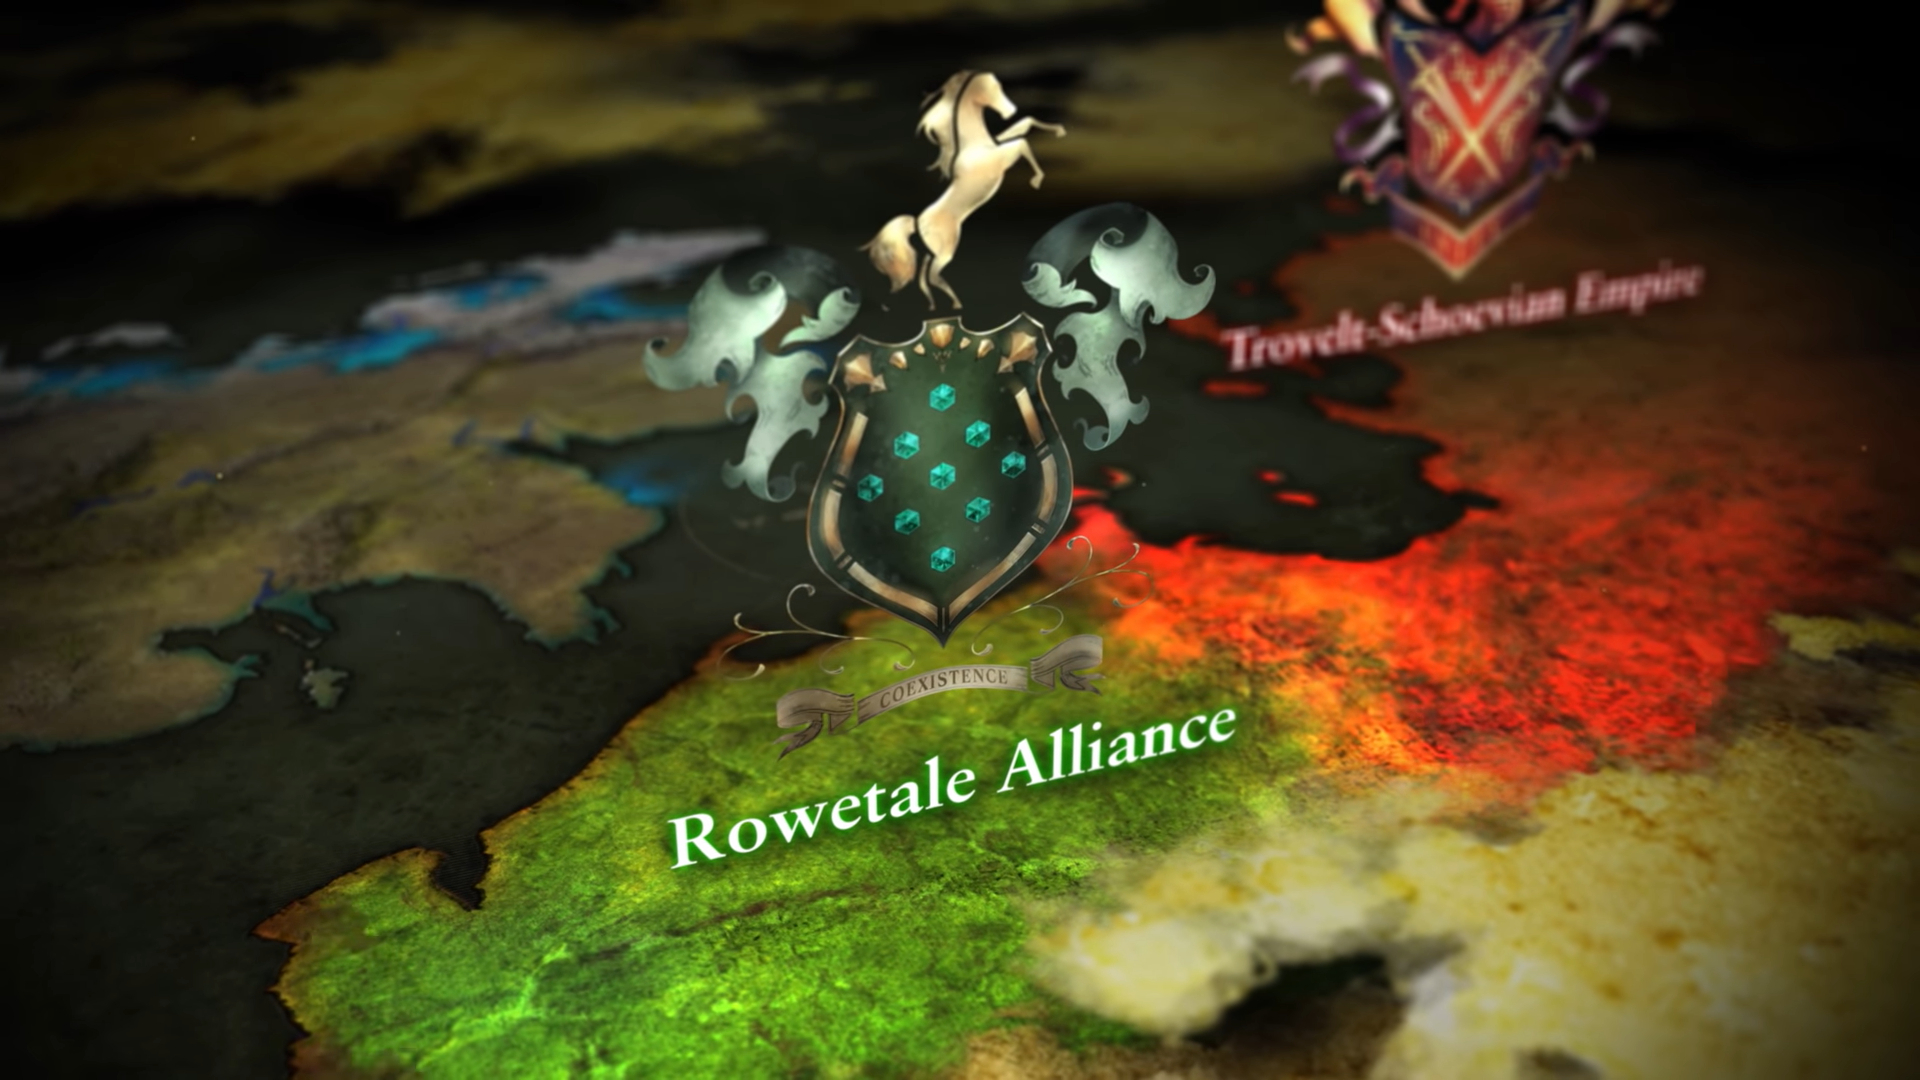 El escudo de la alianza Rowetale.